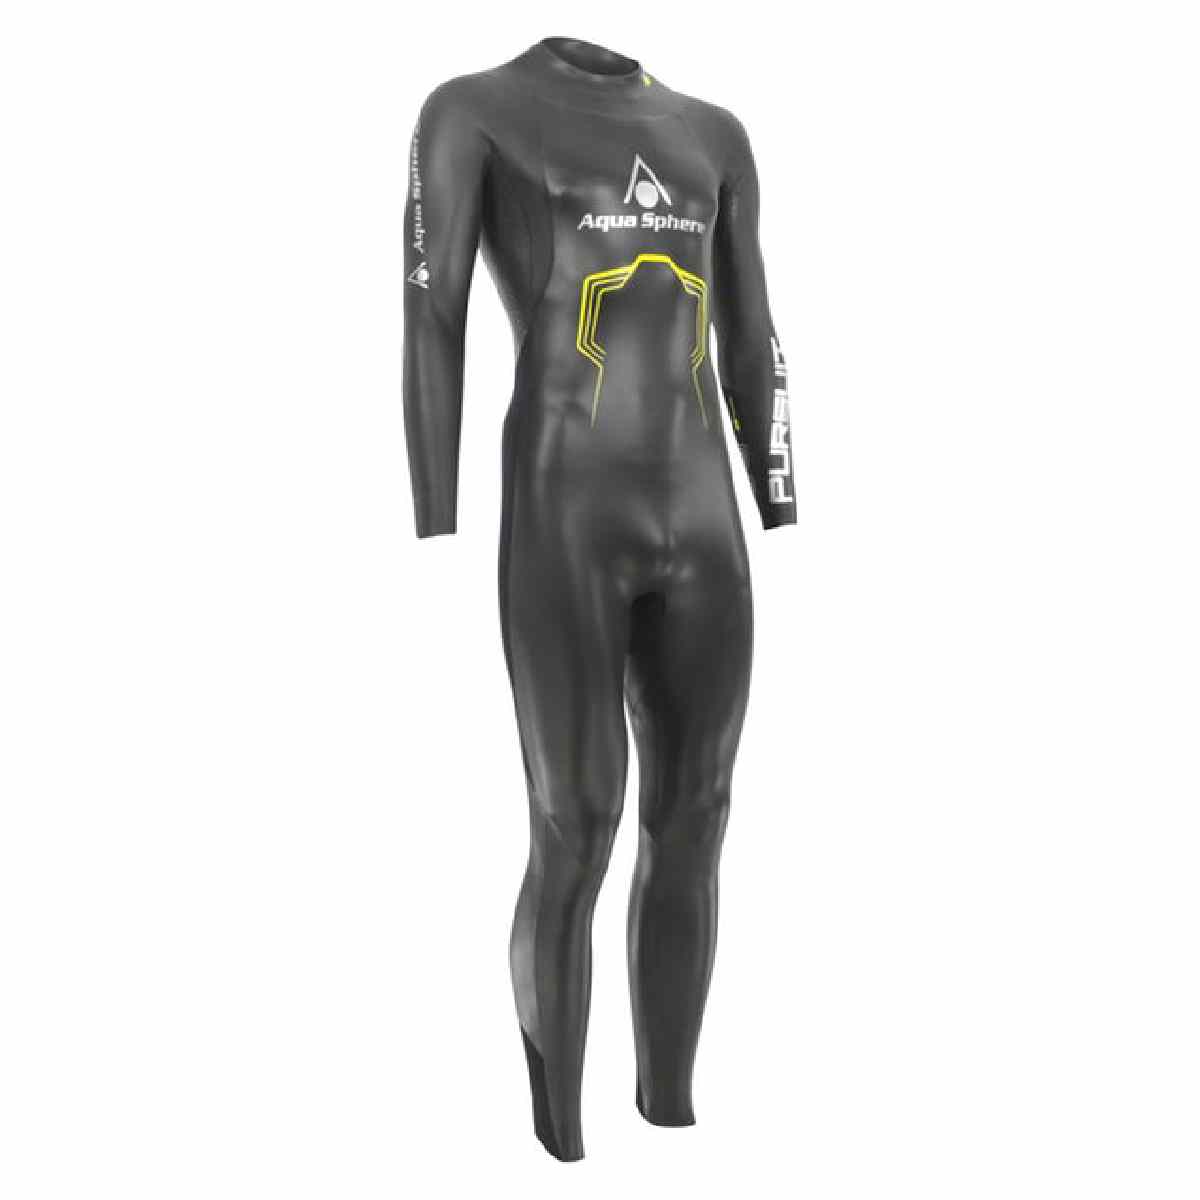 Combinaison isothermique (wetsuit) aqua sphere Pursuit - homme - Medium